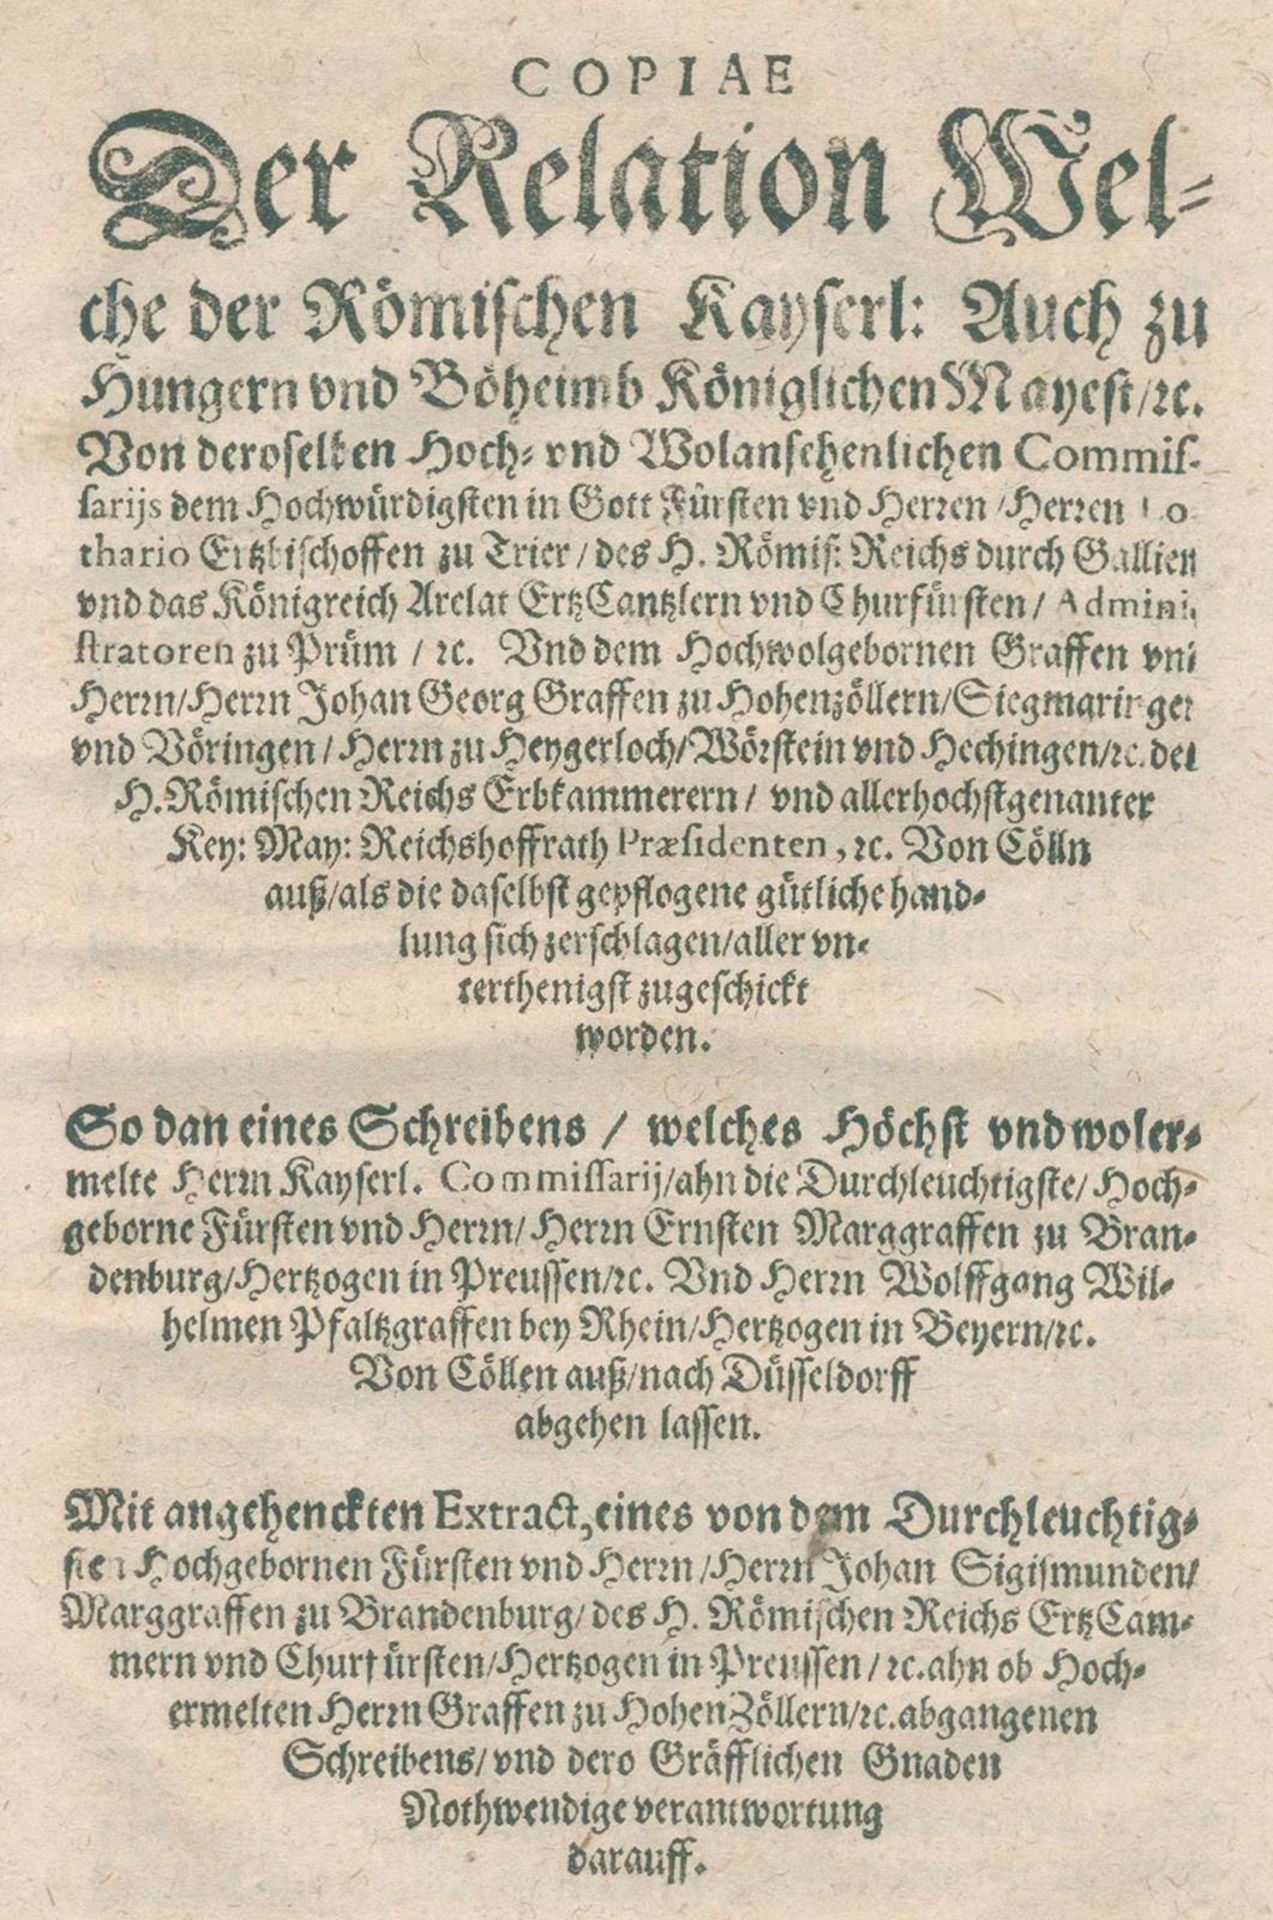 Copiae der Relation - Image 2 of 2